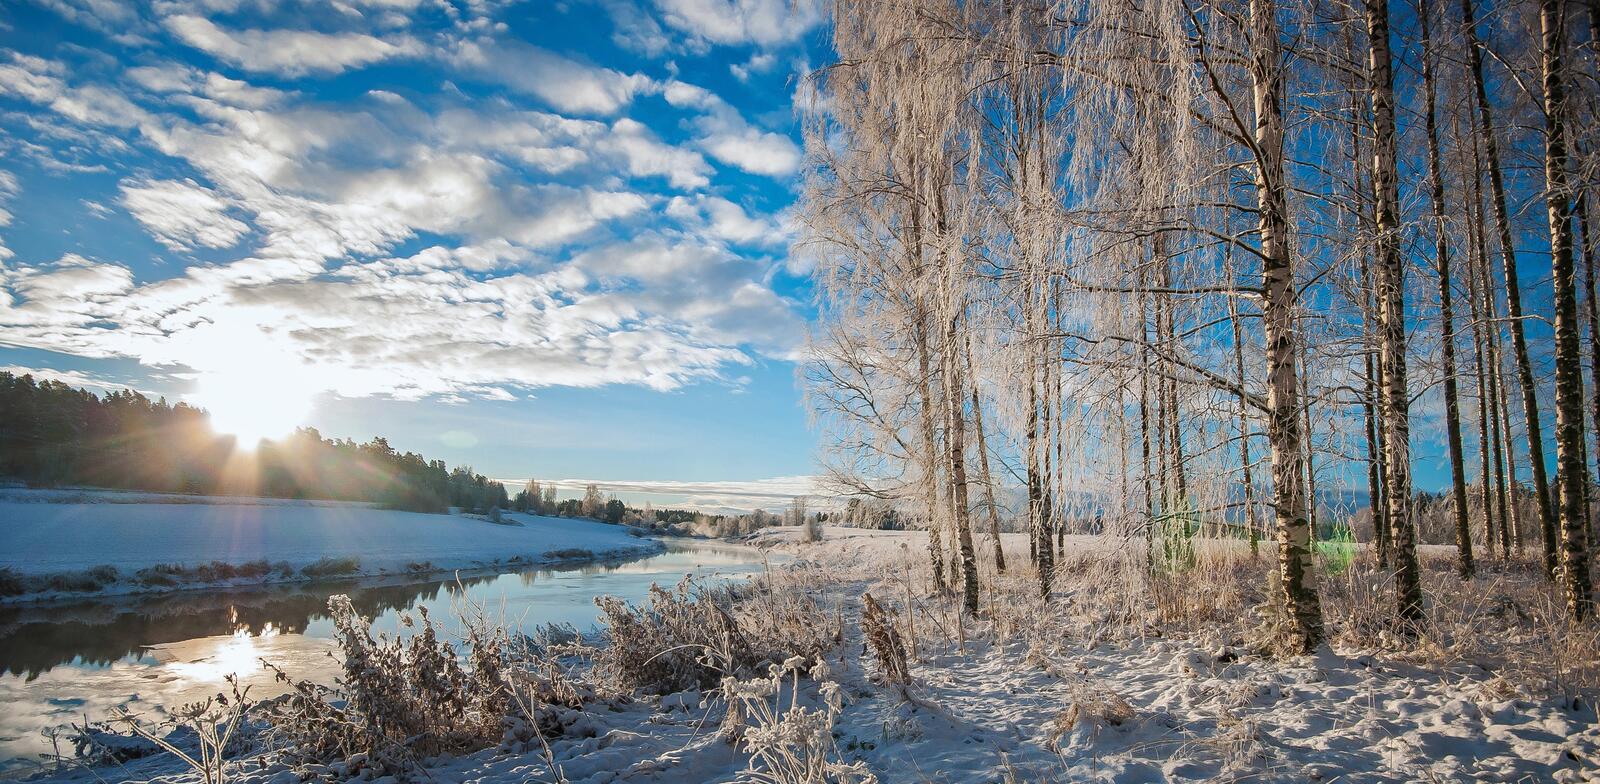 免费照片芬兰 - 冬季全景图